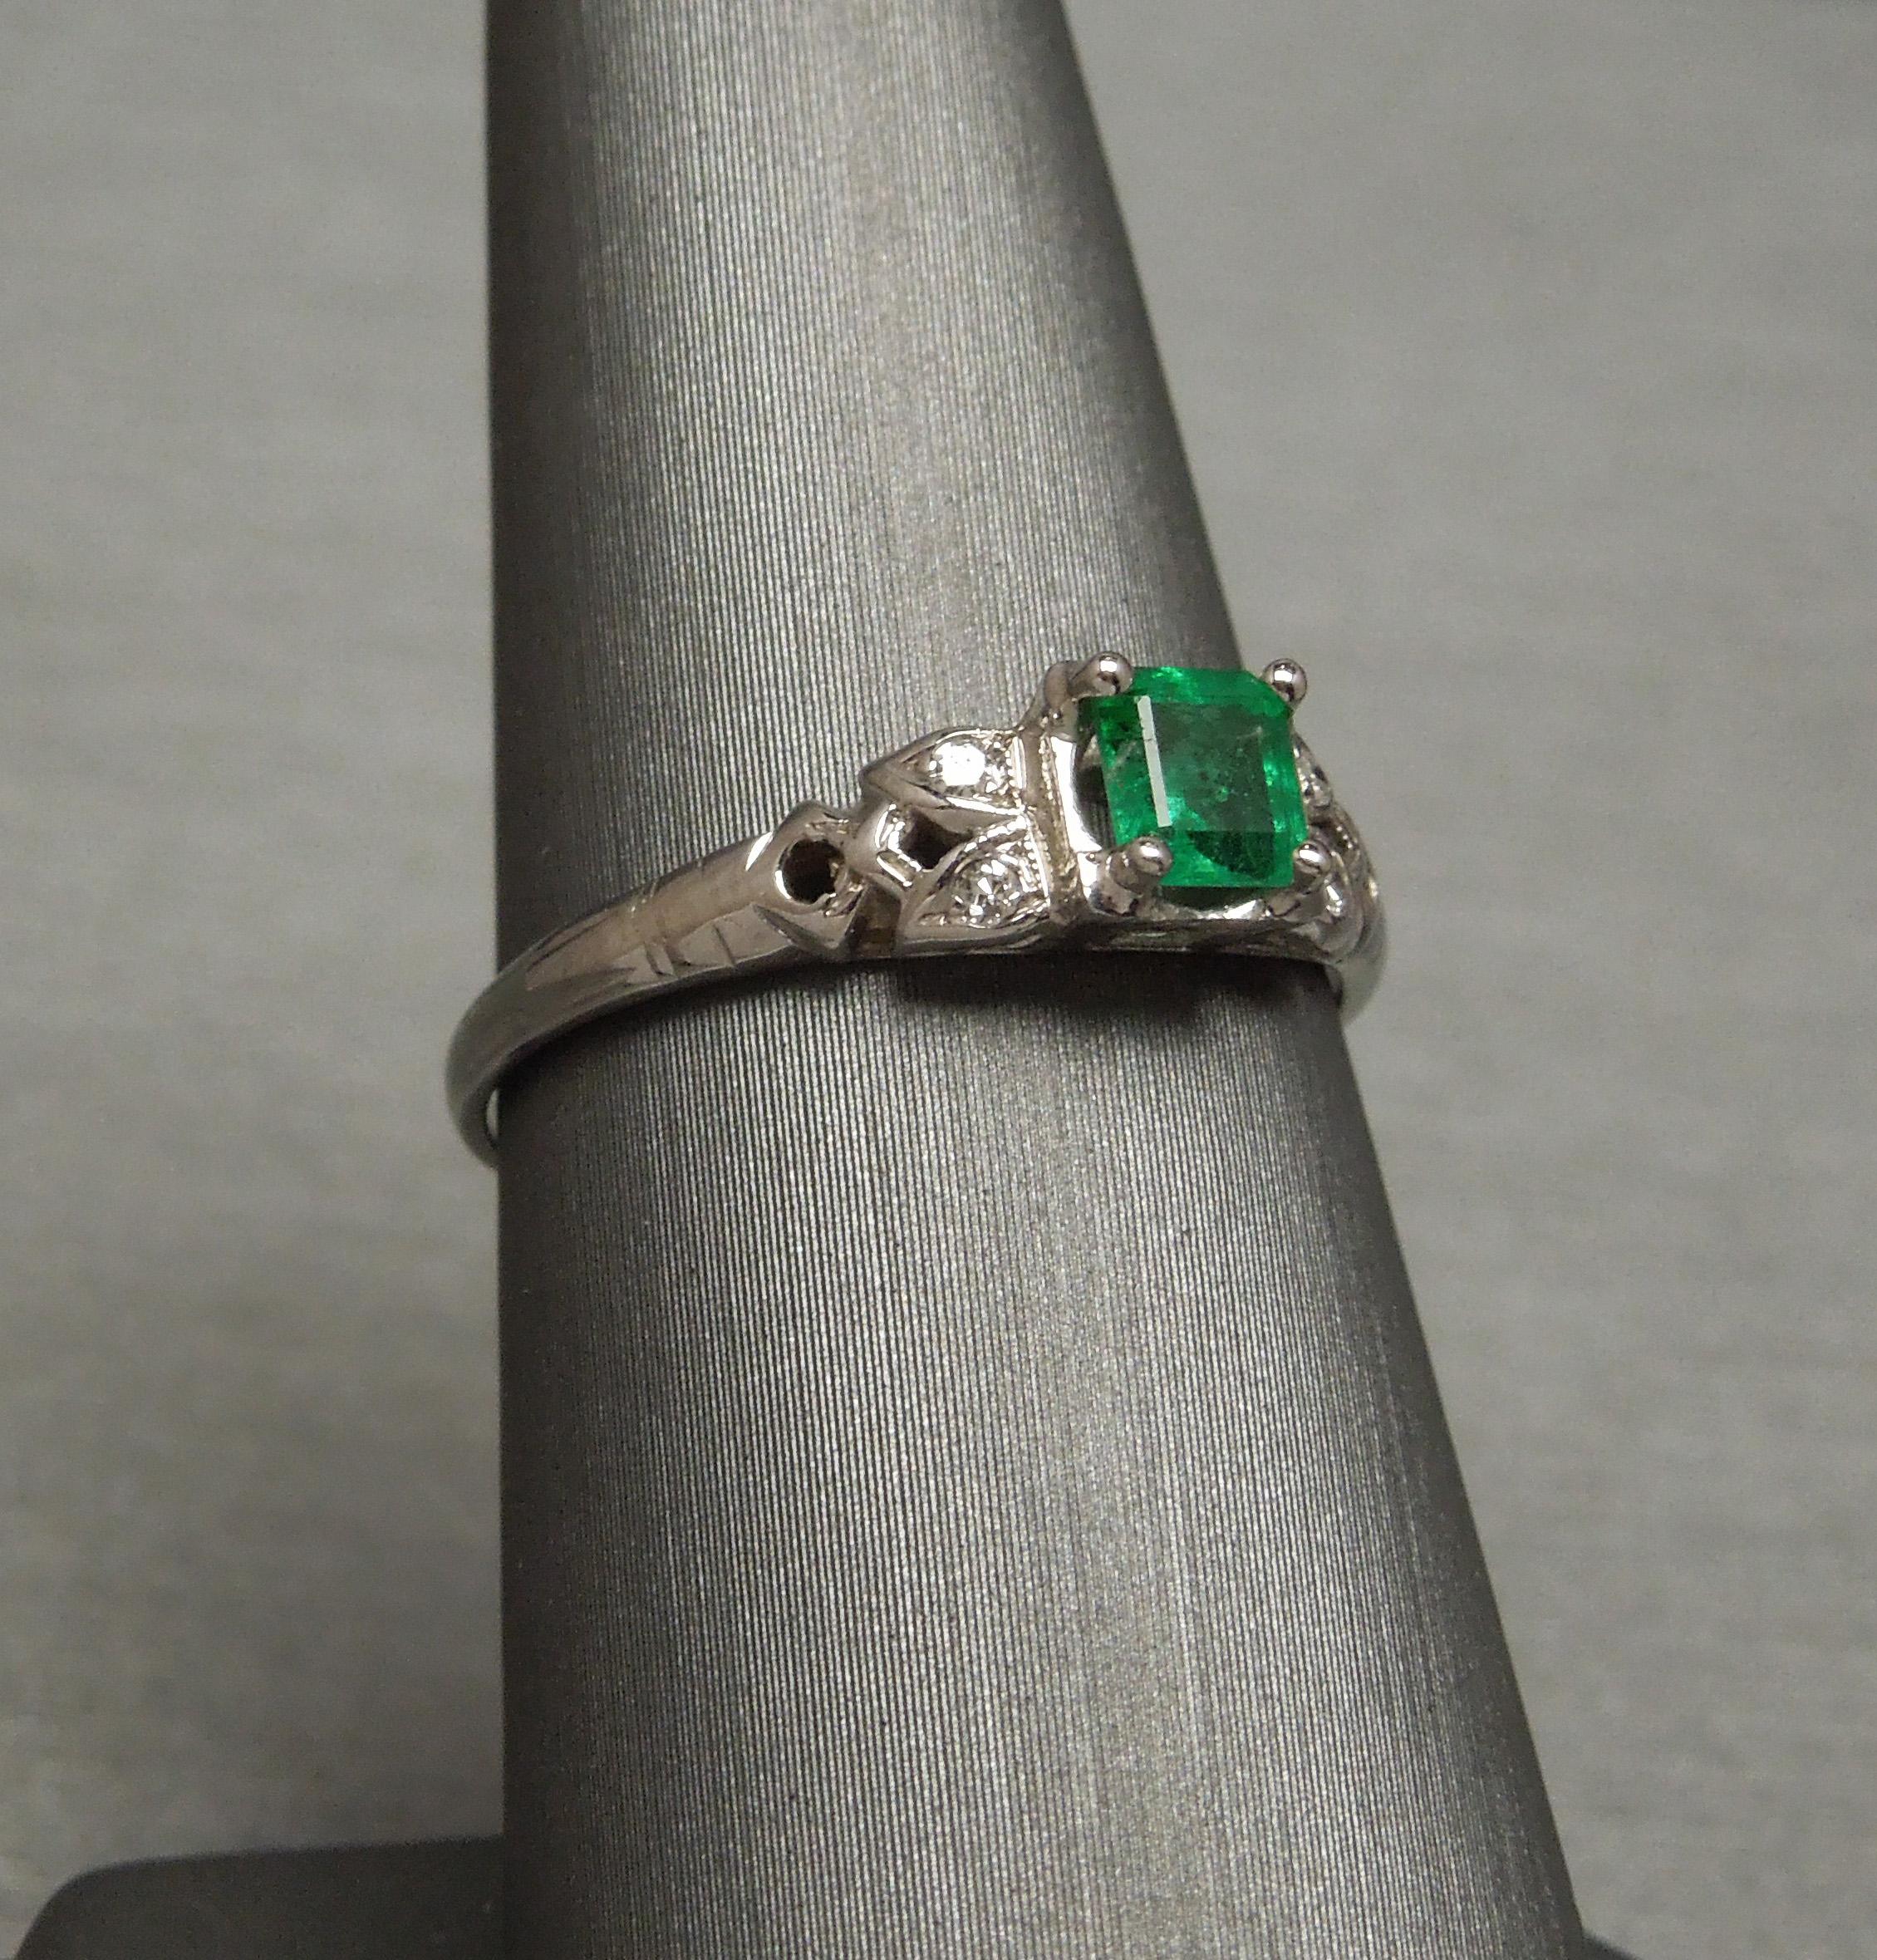 Dieser kolumbianische Smaragd & Diamant-Ring verfügt über eine zentrale 0,43 Karat Quadrat geschnittenen feinen intensiven grünen Smaragd bei 4,7 mm x 4,2 mm, sicher in einem 4-Prong-Fassung - mit allen Eigenschaften eines feinen kolumbianischen